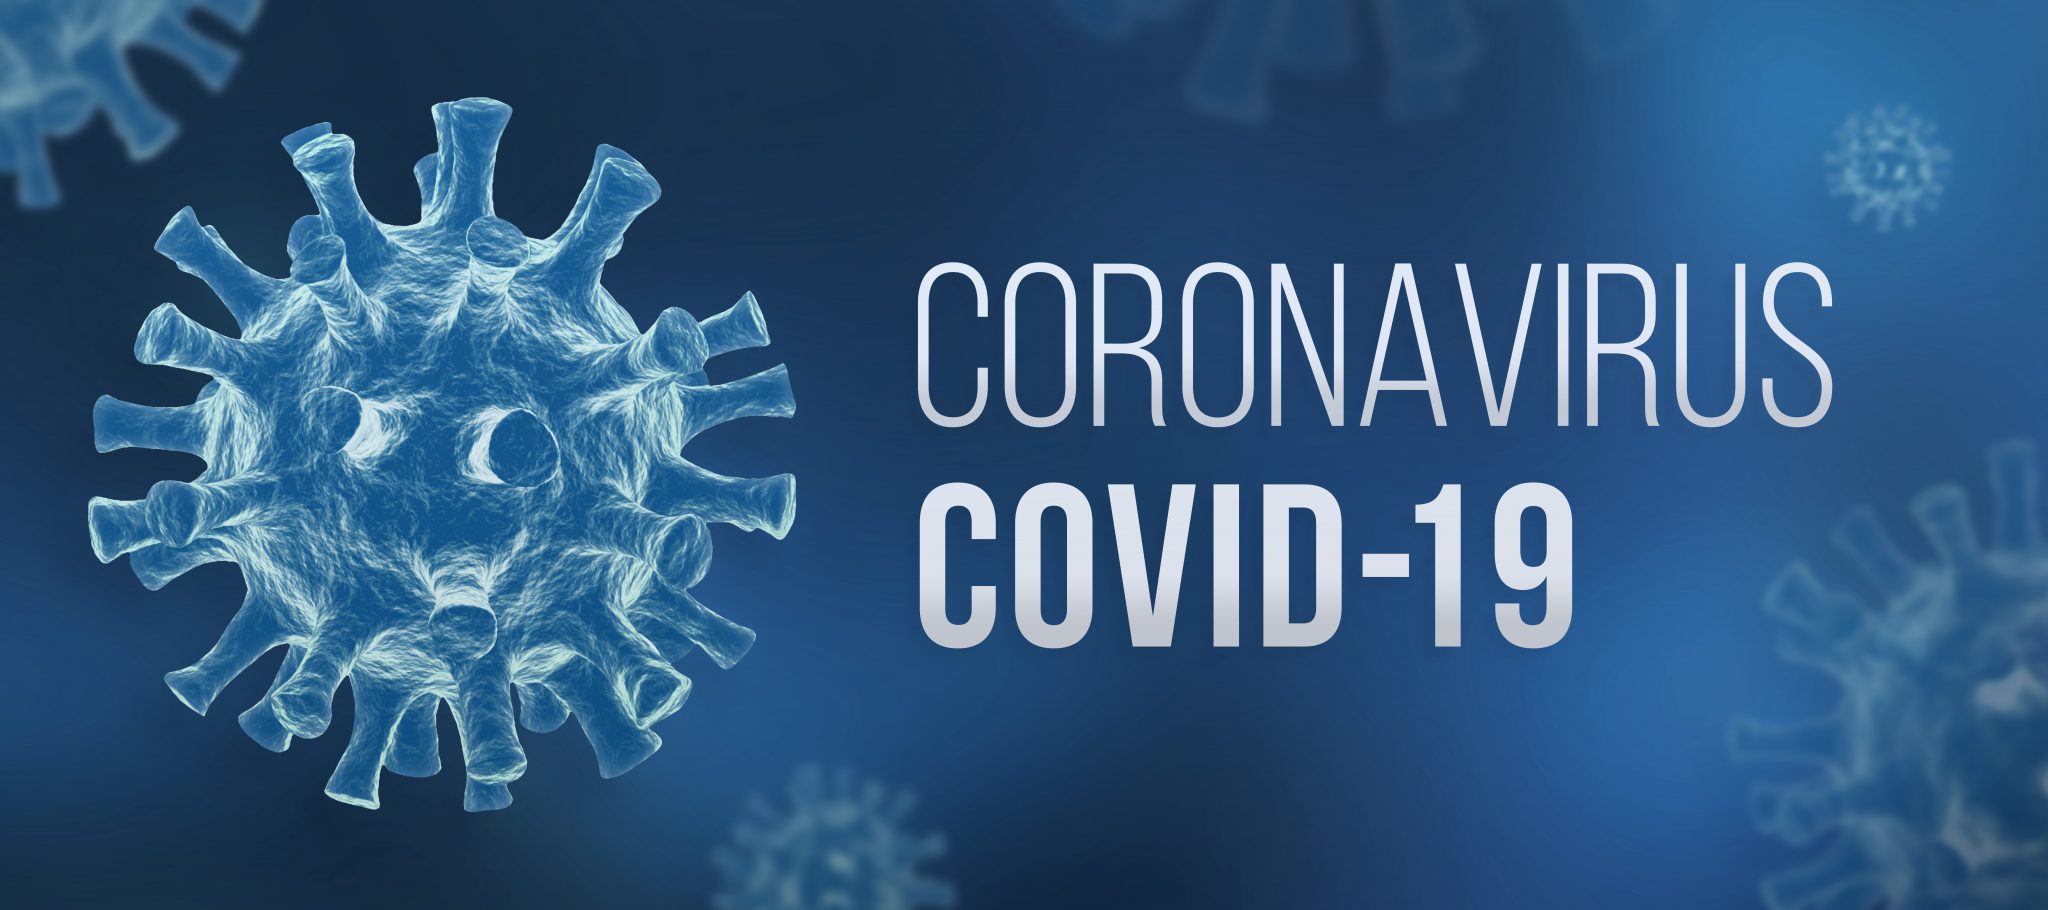 Coronavirus Covid-19 with virus image